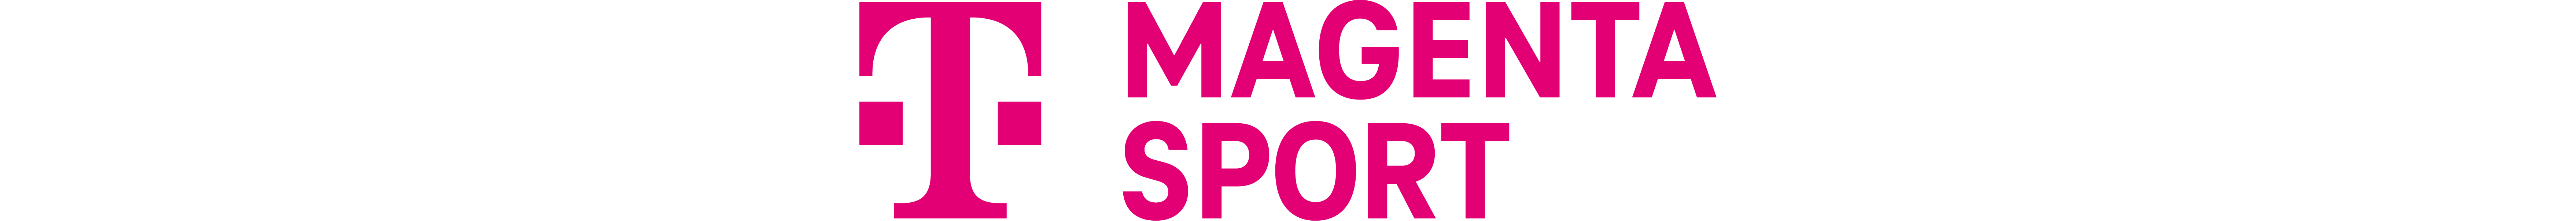 Mitmachen und gewinnen Die Basketball-WM live bei MagentaSport Sports Illustrated